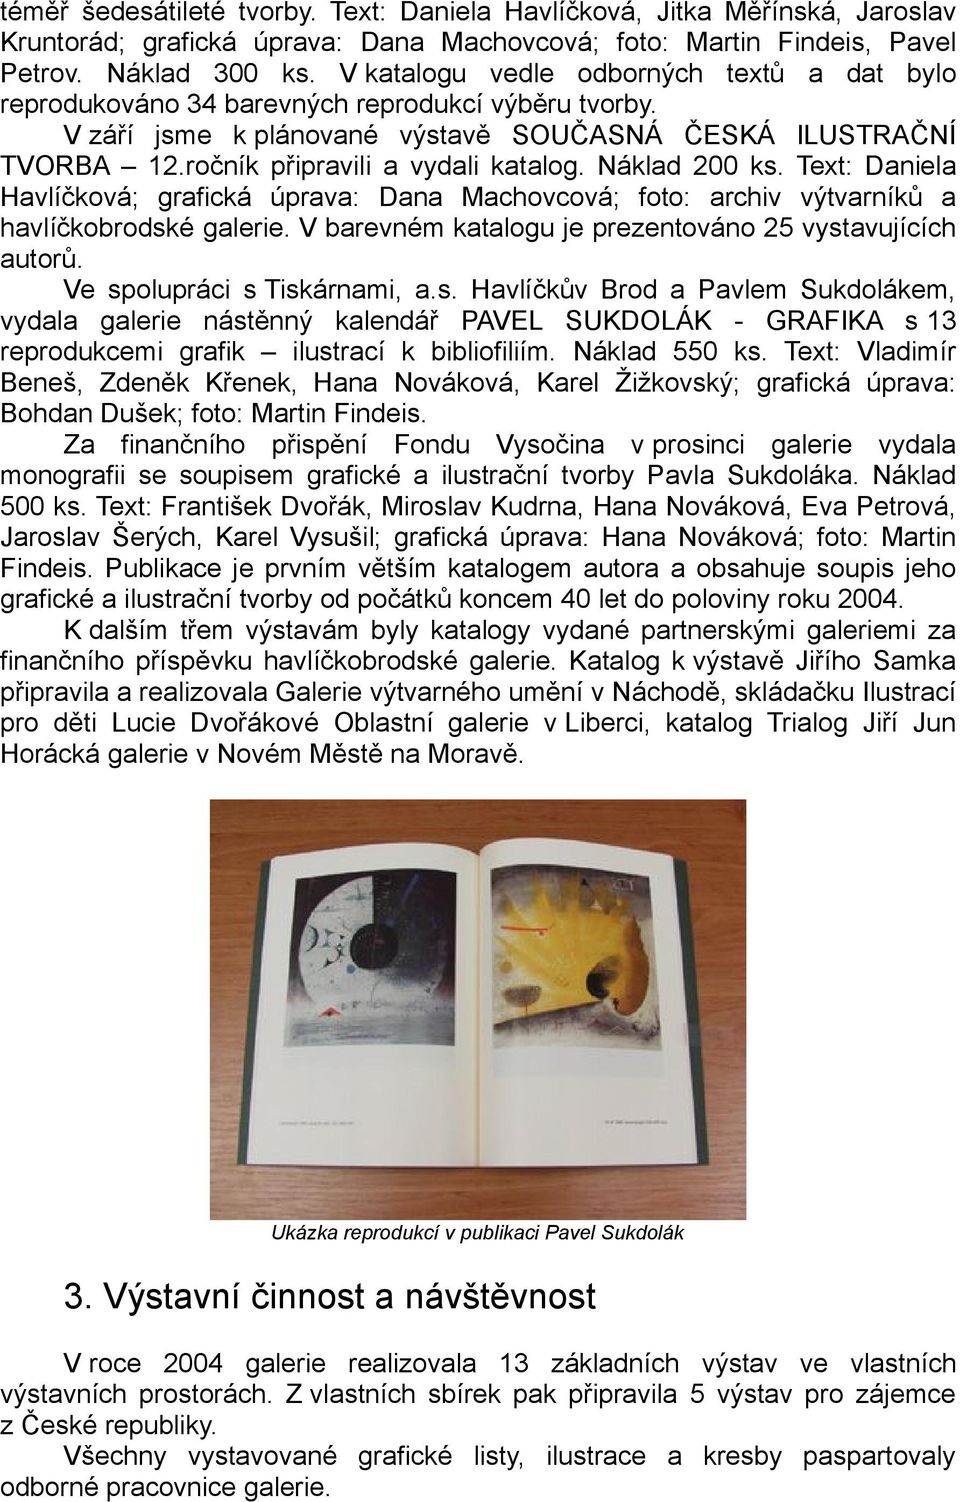 Náklad 200 ks. Text: Daniela Havlíčková; grafická úprava: Dana Machovcová; foto: archiv výtvarníků a havlíčkobrodské galerie. V barevném katalogu je prezentováno 25 vystavujících autorů.